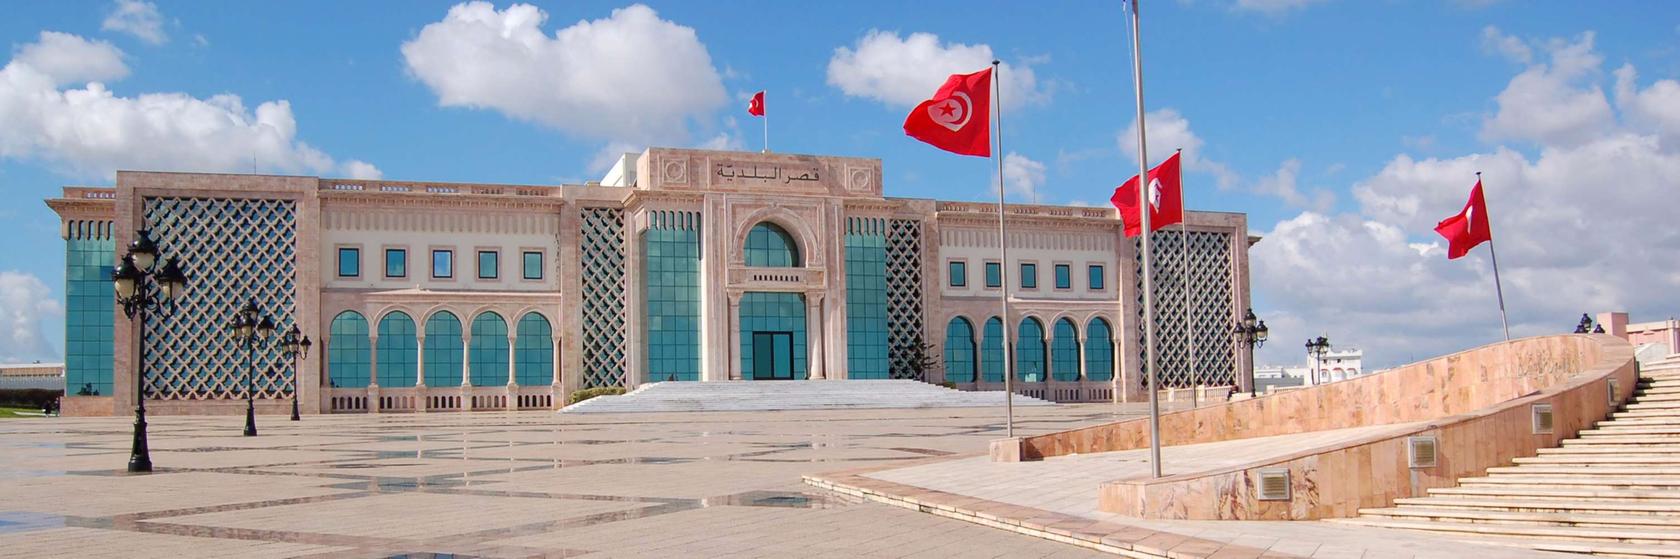 Tipy na výlety v Tunisu a okolí